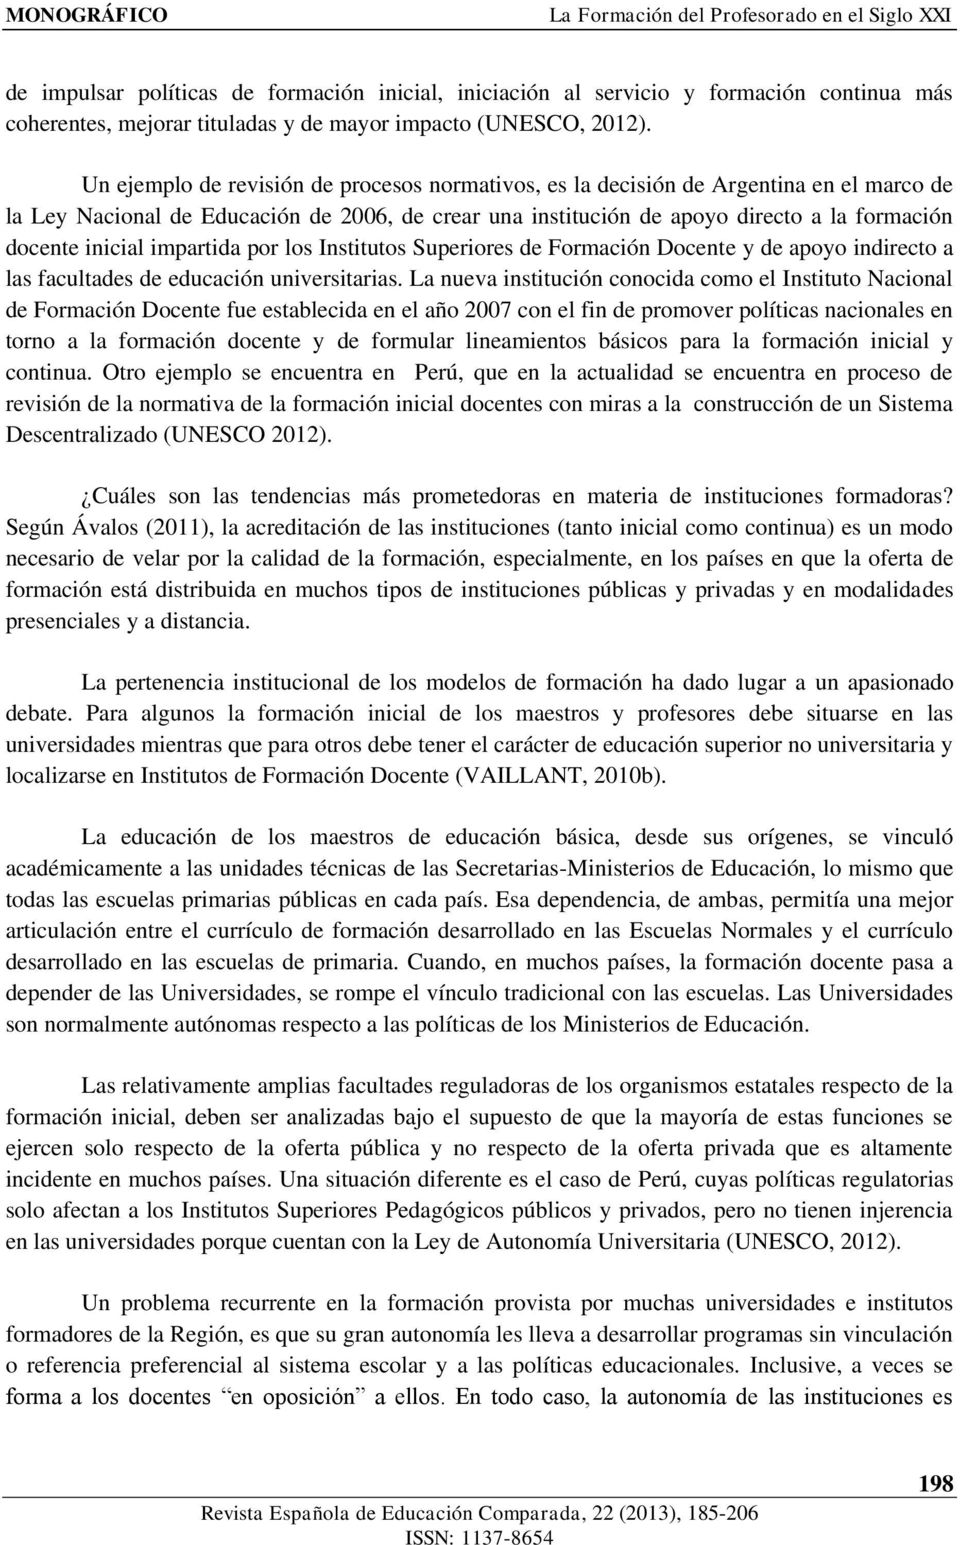 Un ejemplo de revisión de procesos normativos, es la decisión de Argentina en el marco de la Ley Nacional de Educación de 2006, de crear una institución de apoyo directo a la formación docente